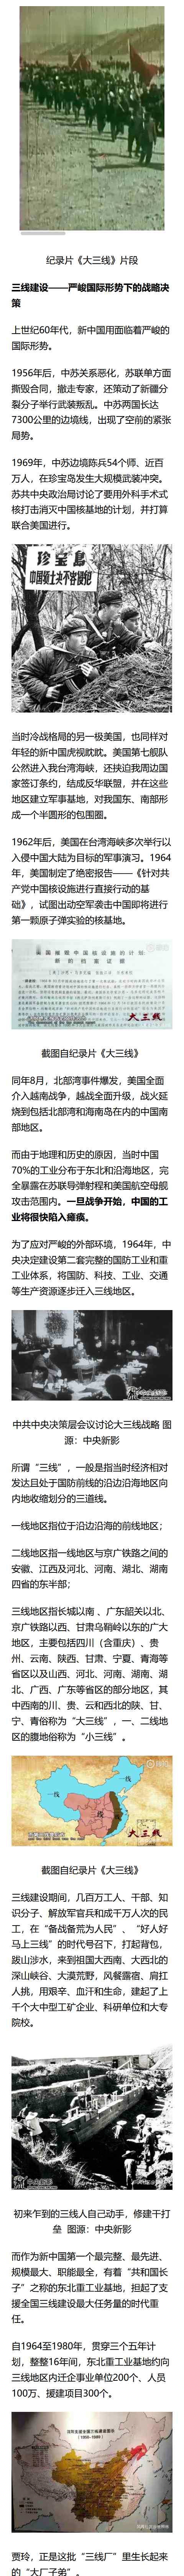 《你好 李焕英》里的襄樊工厂 人们为啥说话一股东北大碴子味儿？